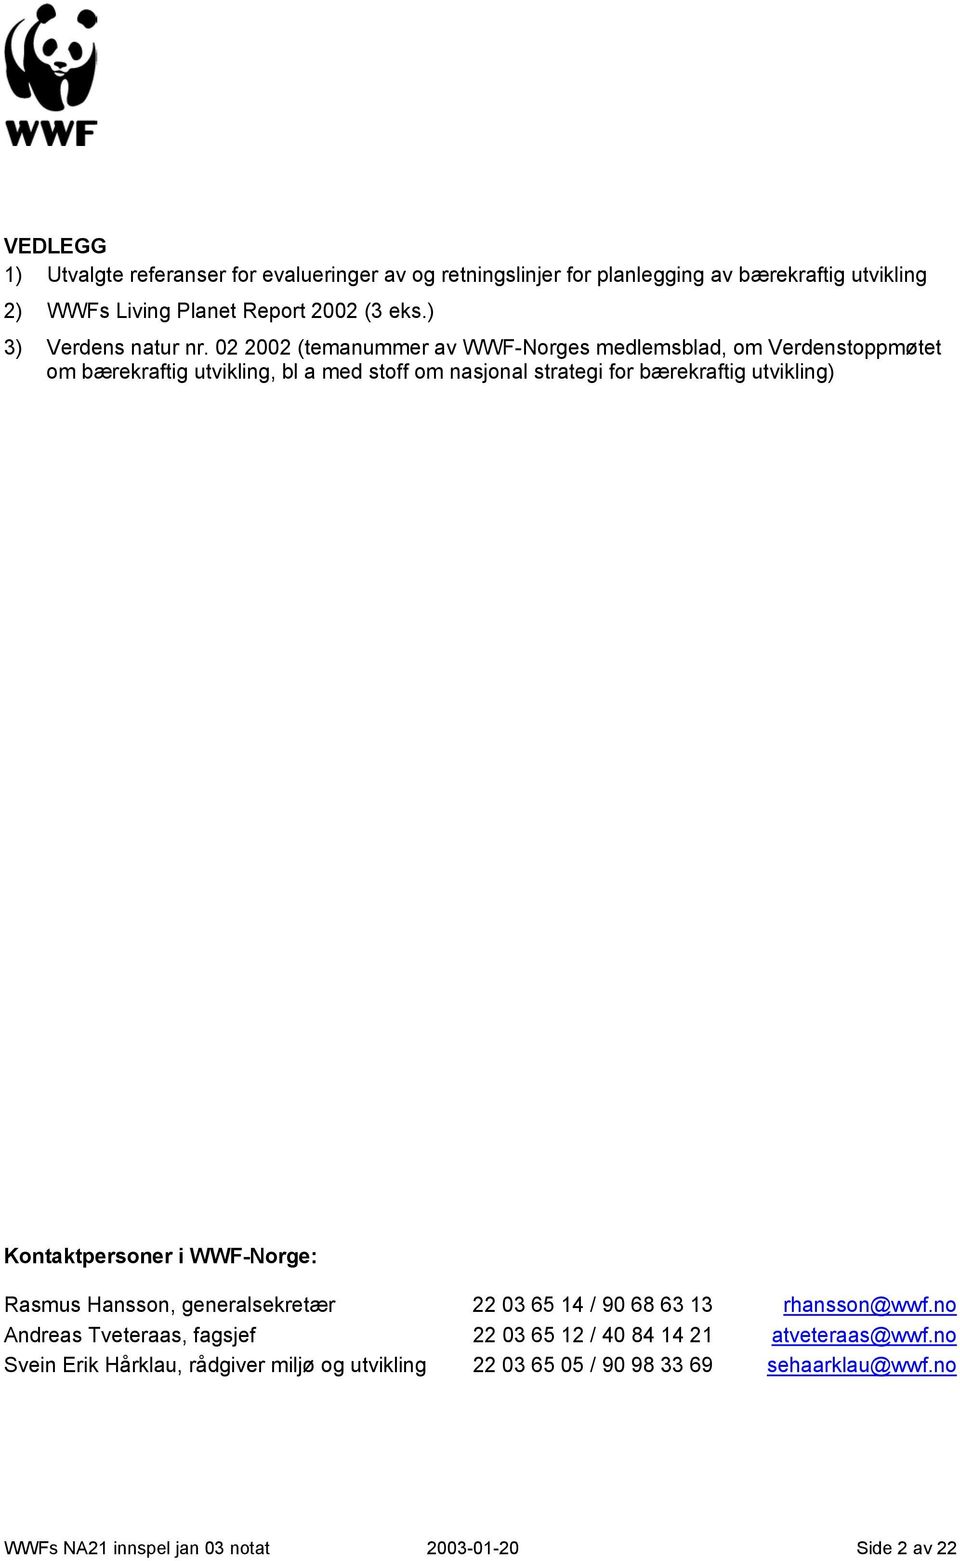 02 2002 (temanummer av WWF-Norges medlemsblad, om Verdenstoppmøtet om bærekraftig utvikling, bl a med stoff om nasjonal strategi for bærekraftig utvikling)